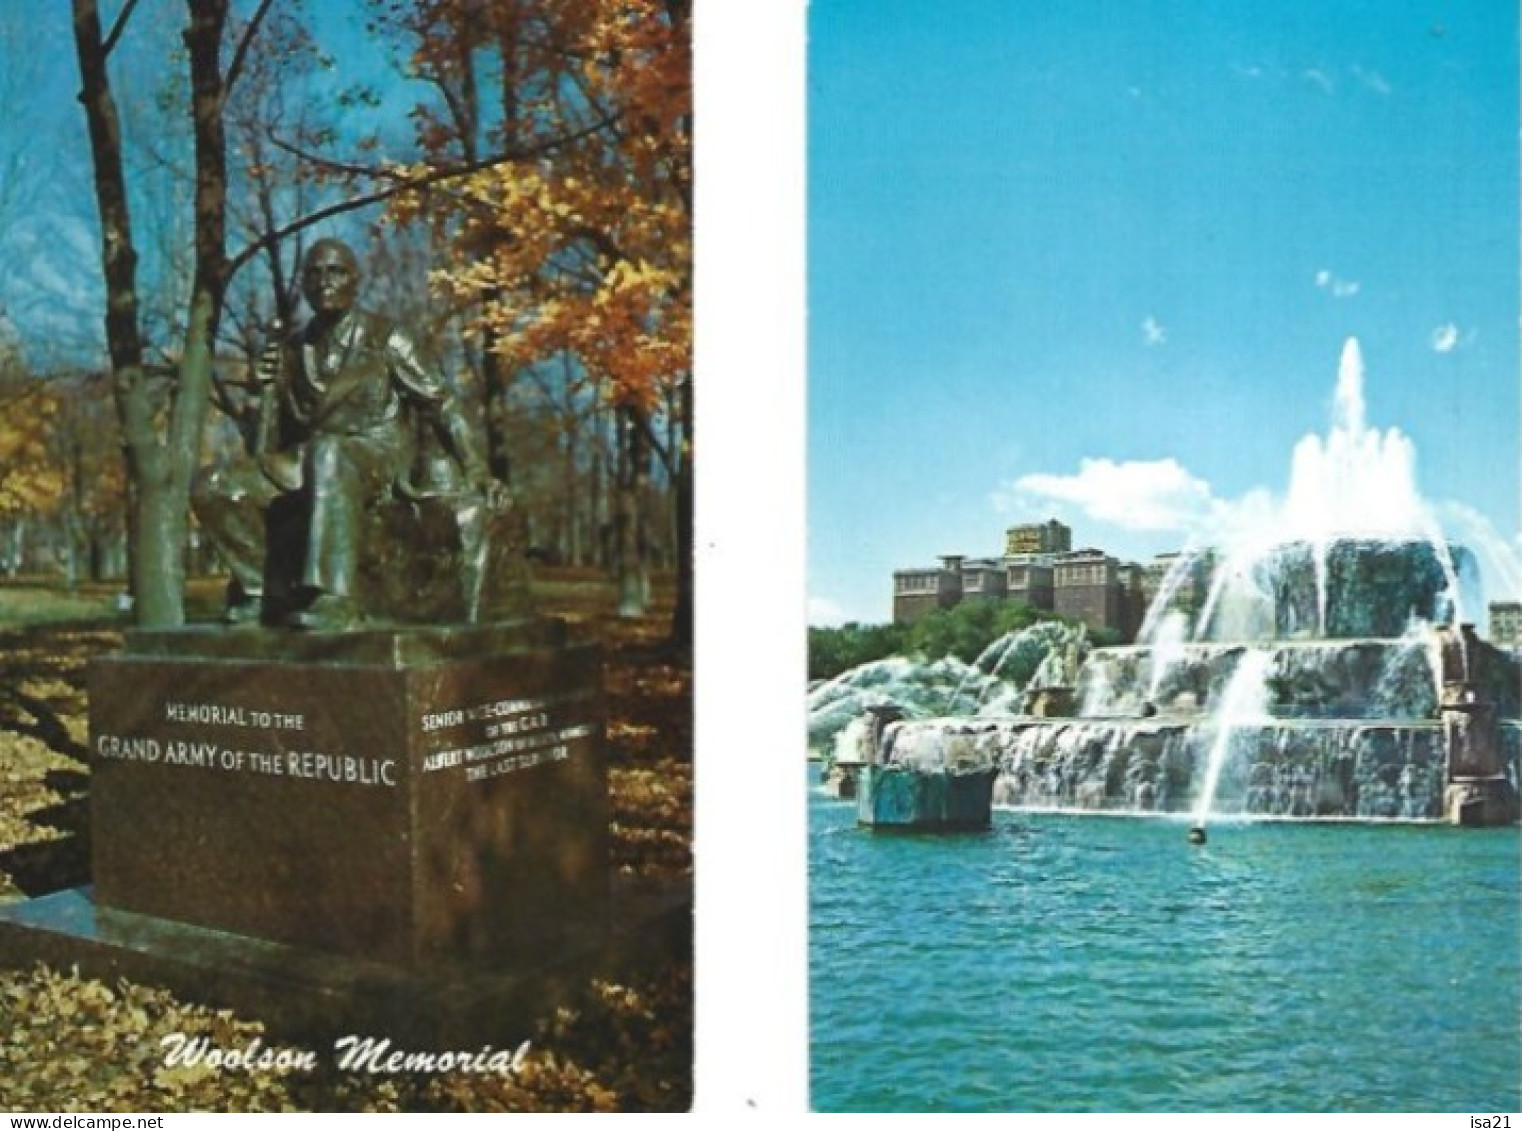 Lot de 25 cartes postales: CPM Etats Unis, Amérique du Nord: NEW-YORK, DALLAS, HOUSTON, etc.